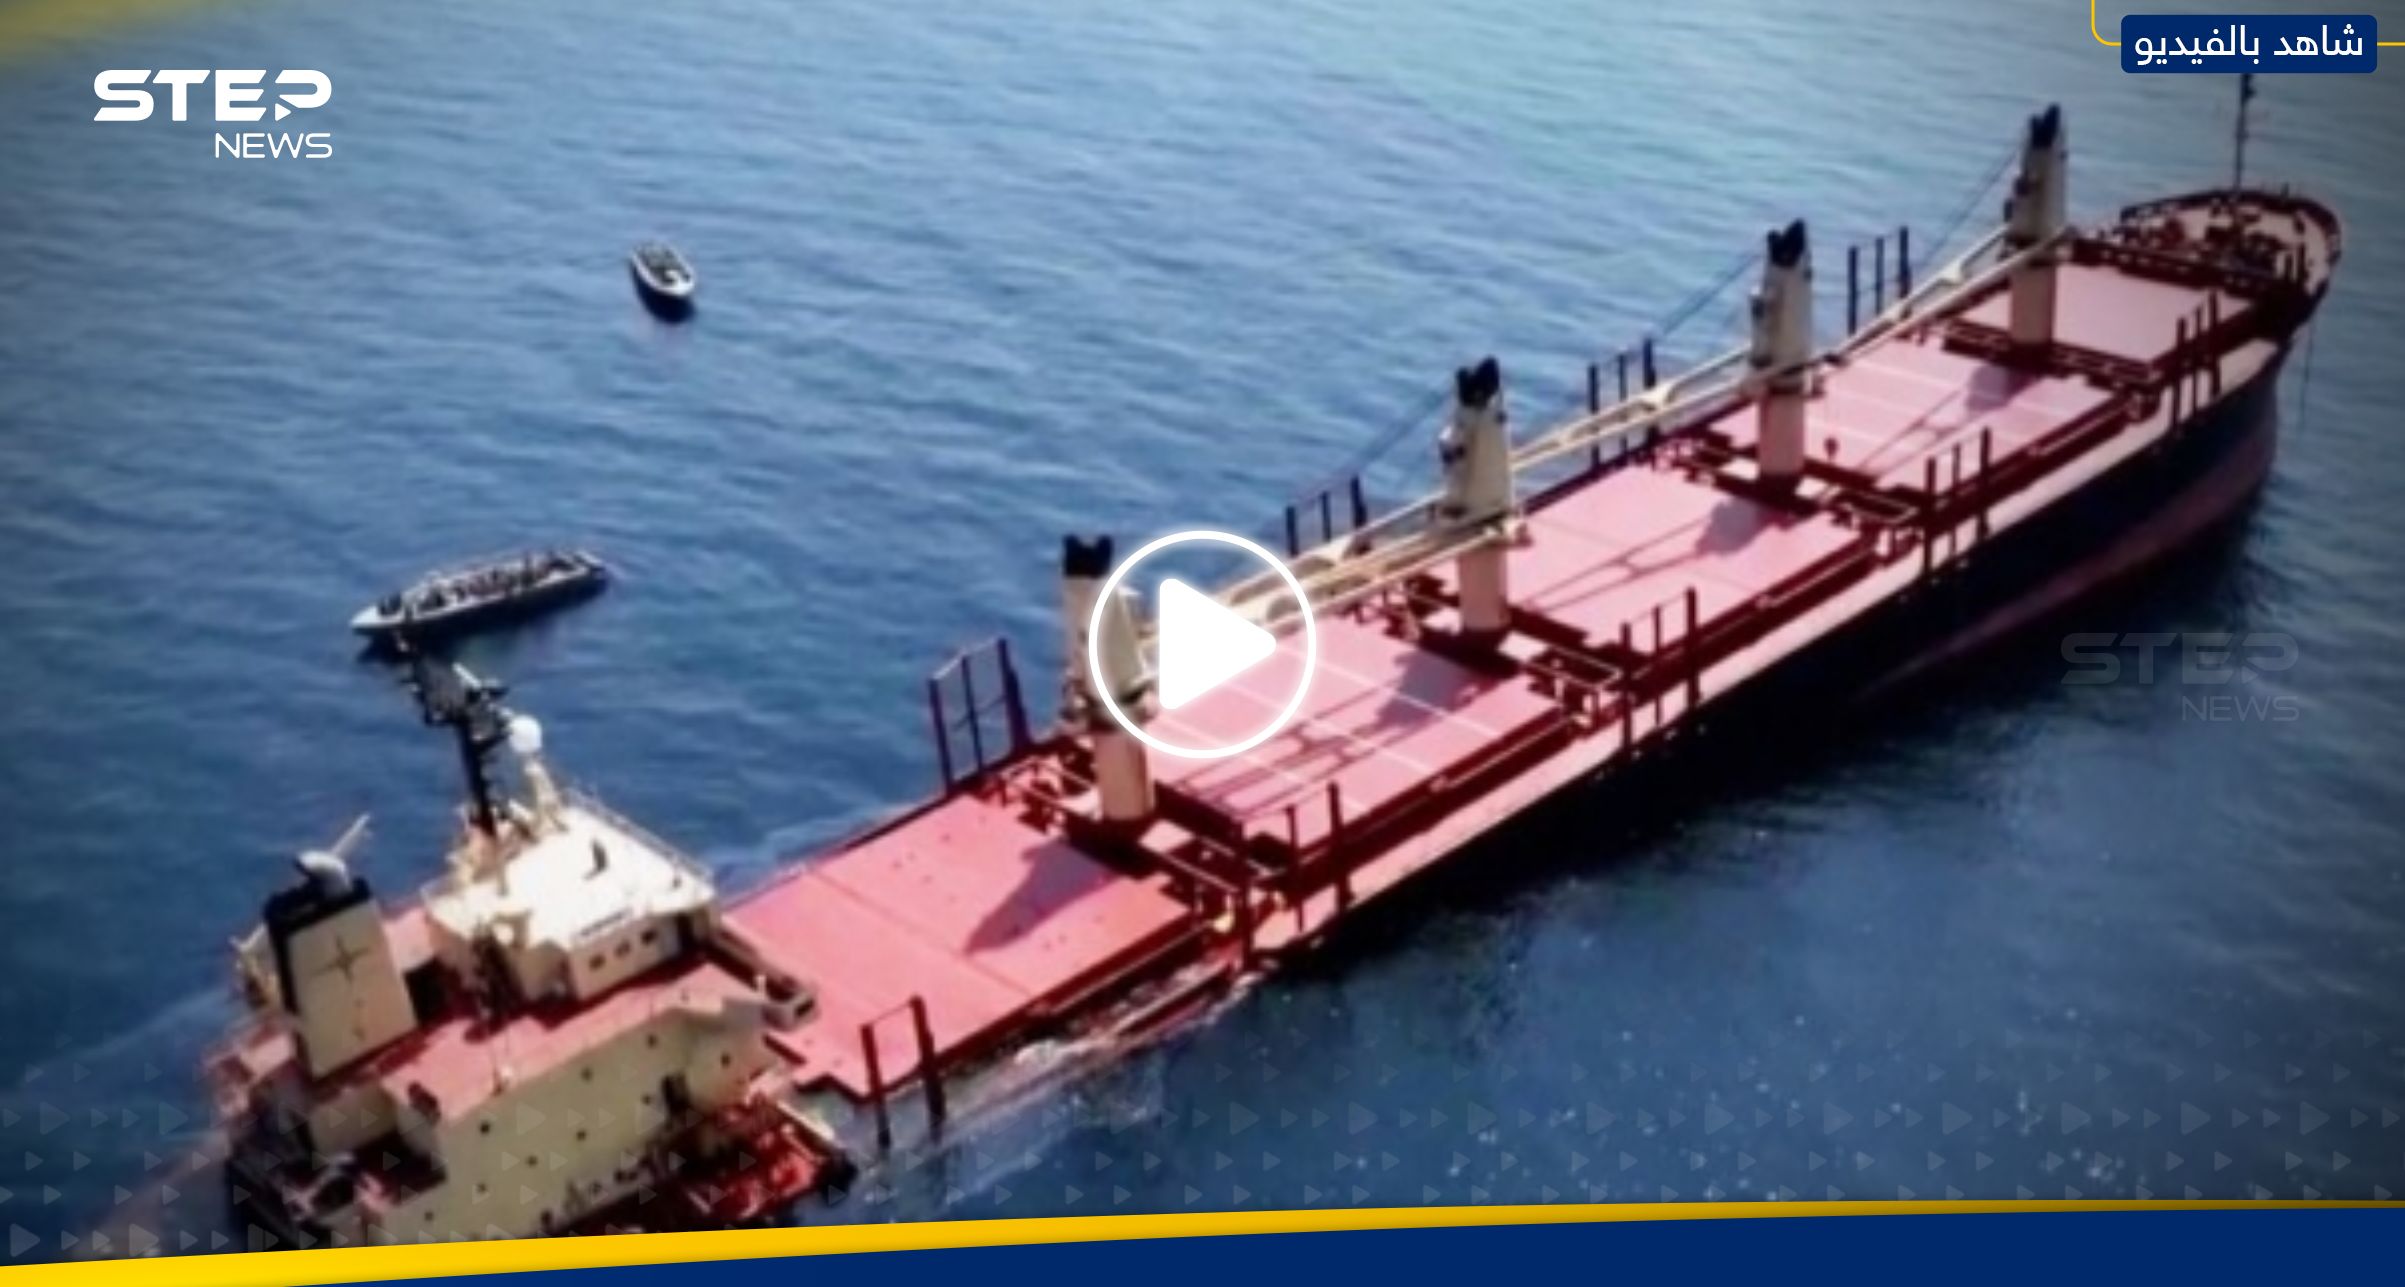 - فيديو من داخل السفينة روبيمار الغارقة فور قصفها